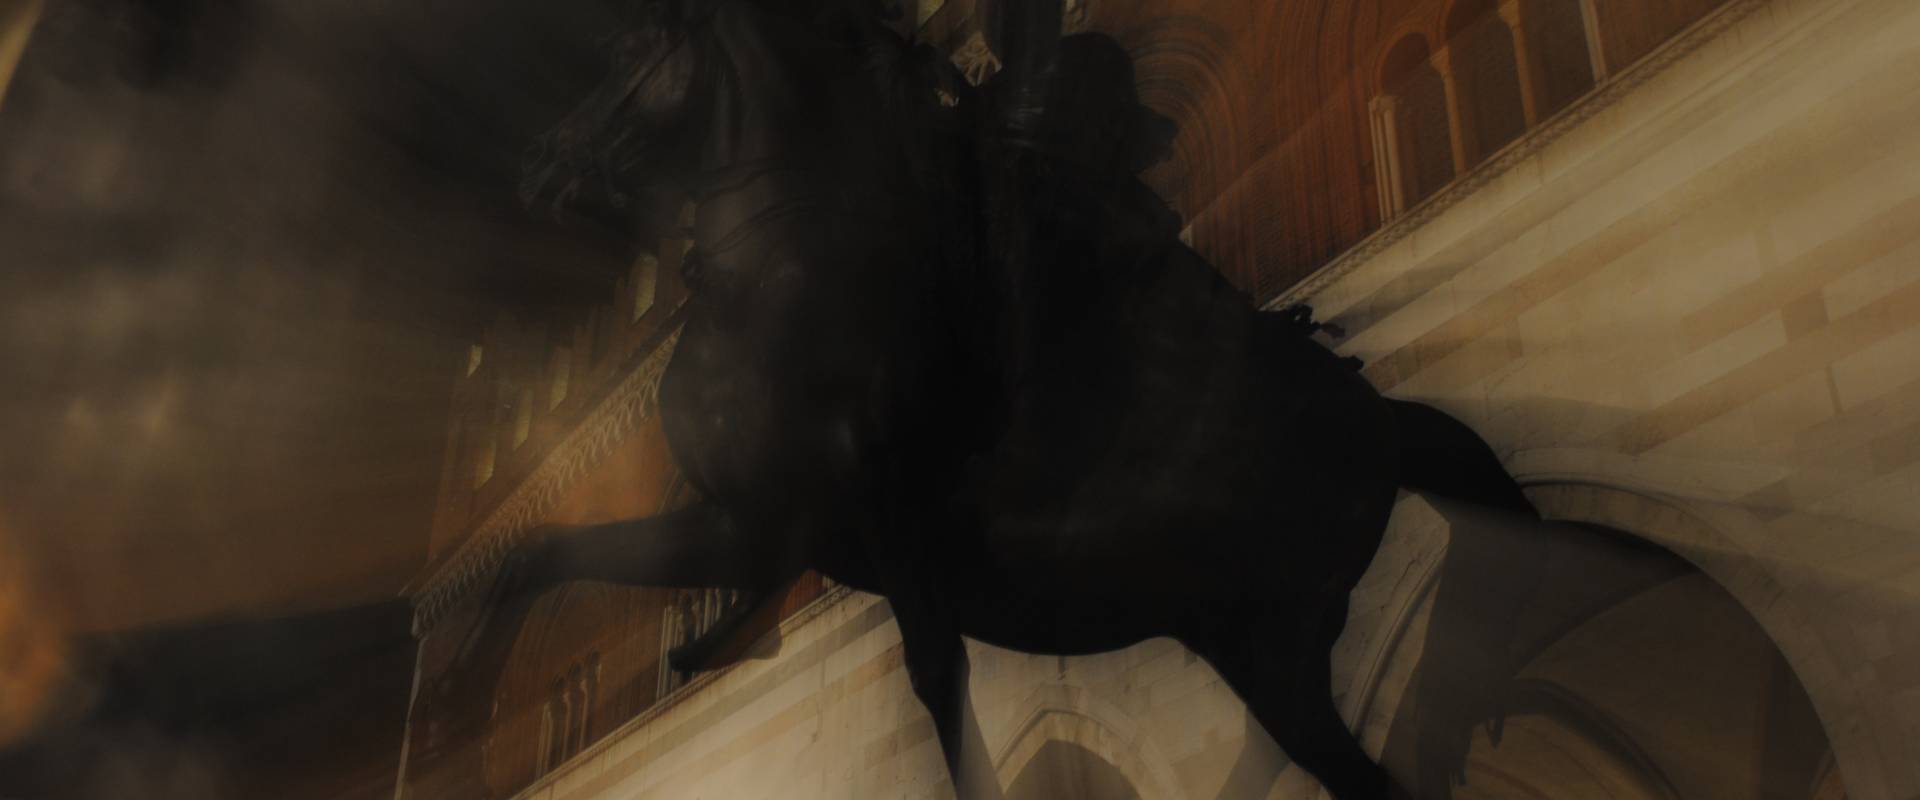 Cavallo di notte, mosso foto di Ele.vt